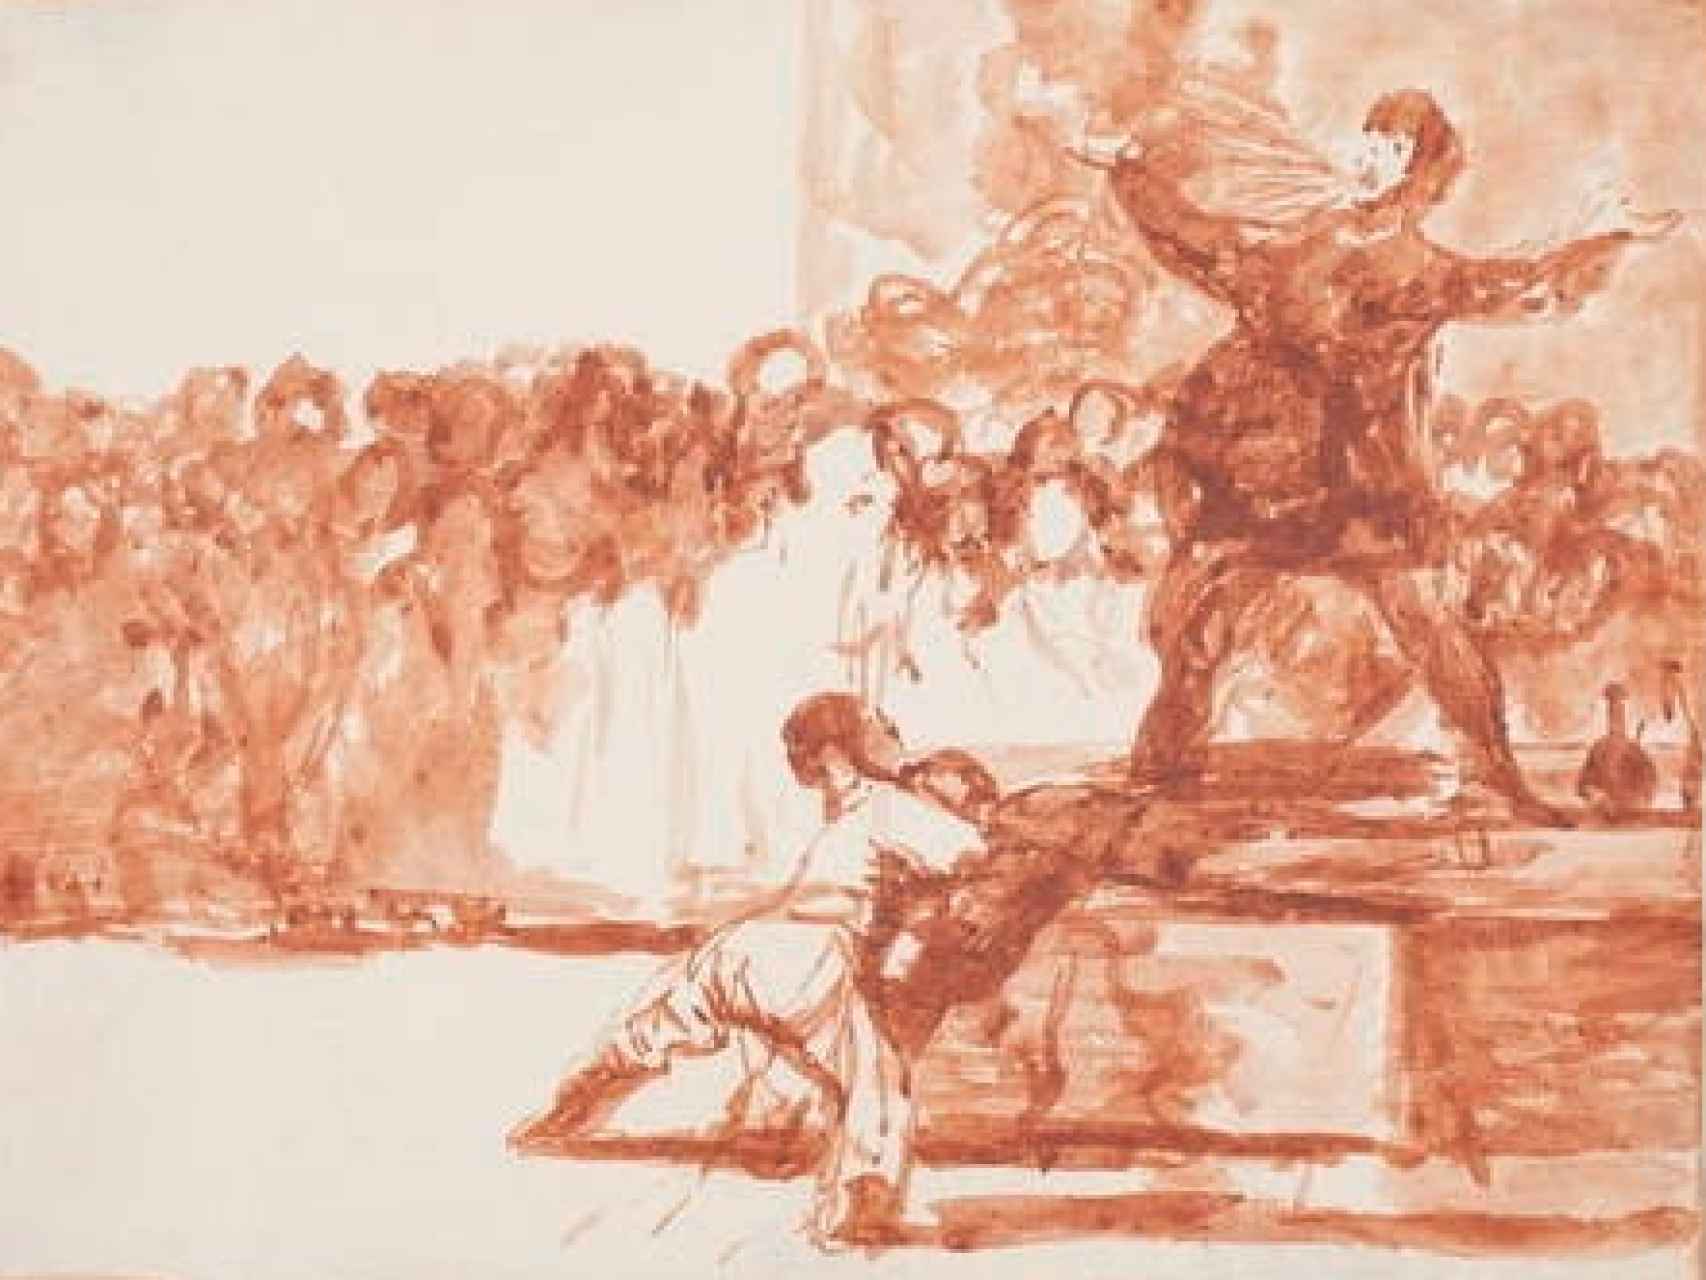 Estampa de Francisco de Goya dedicada al tragafuegos.